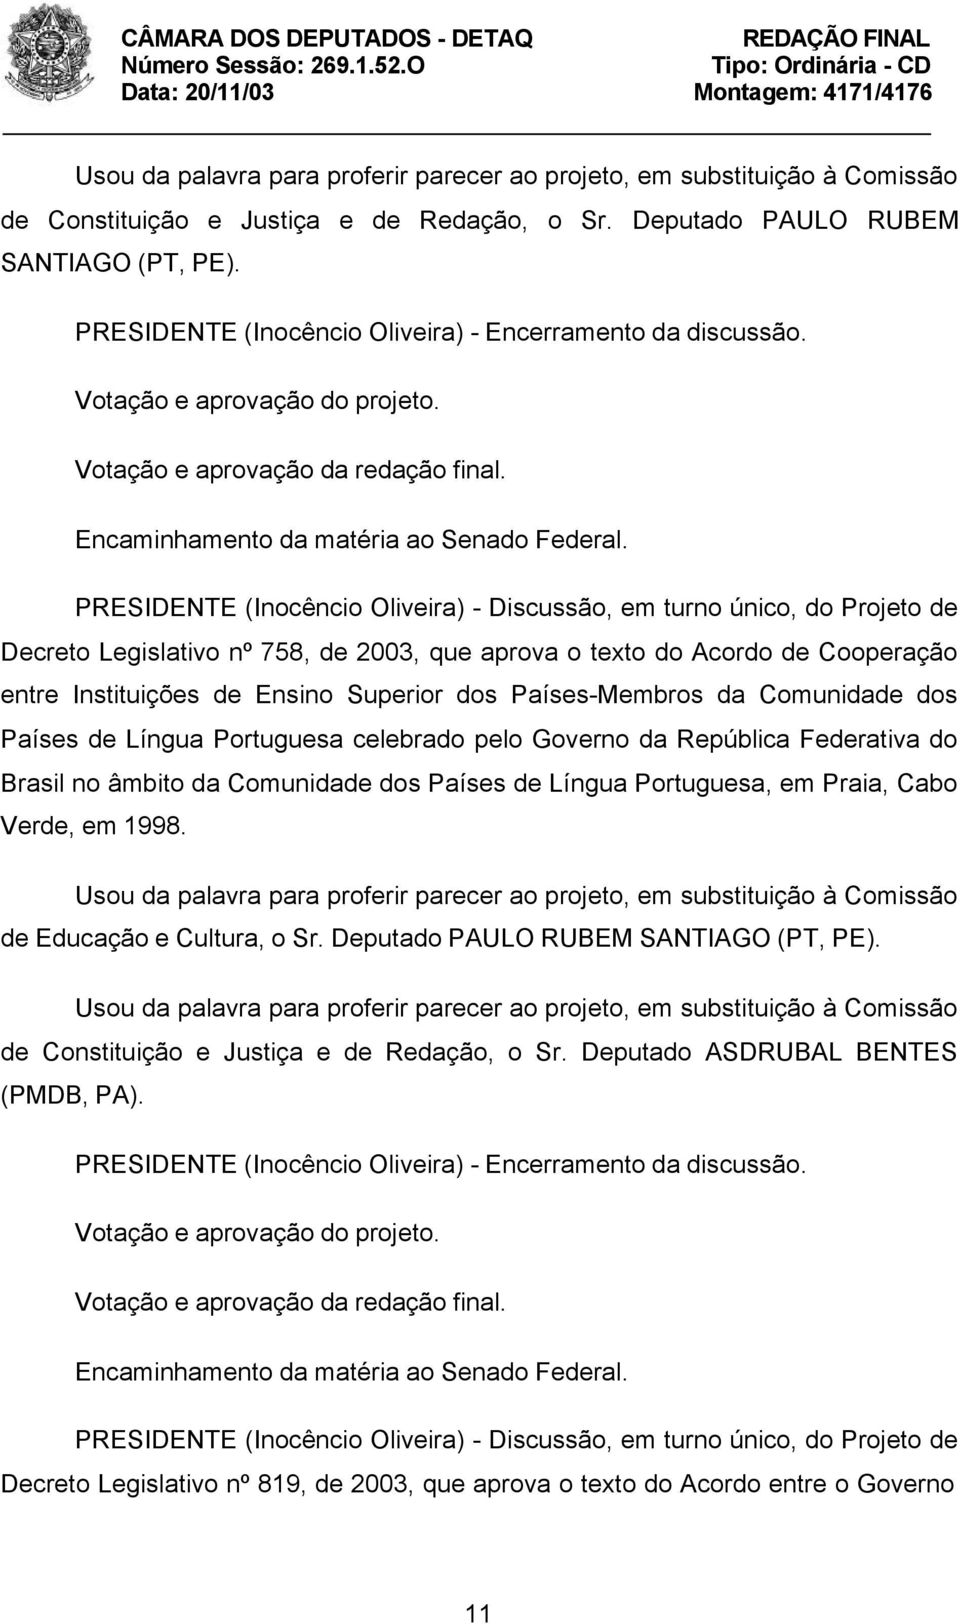 PRESIDENTE (Inocêncio Oliveira) - Discussão, em turno único, do Projeto de Decreto Legislativo nº 758, de 2003, que aprova o texto do Acordo de Cooperação entre Instituições de Ensino Superior dos